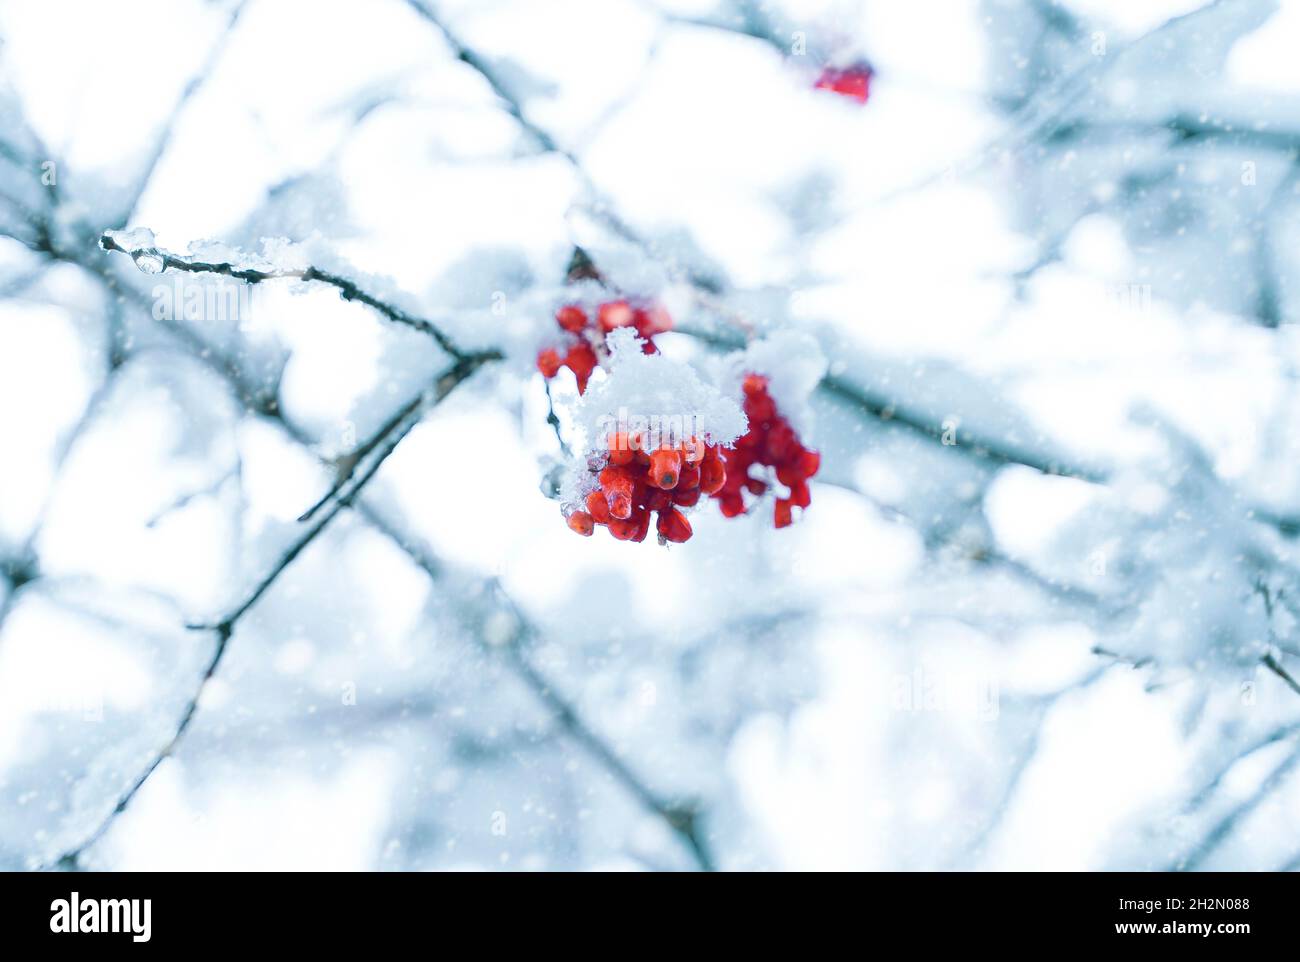 Baies rouges recouvertes de neige accrochée à la branche de l'arbre. Banque D'Images